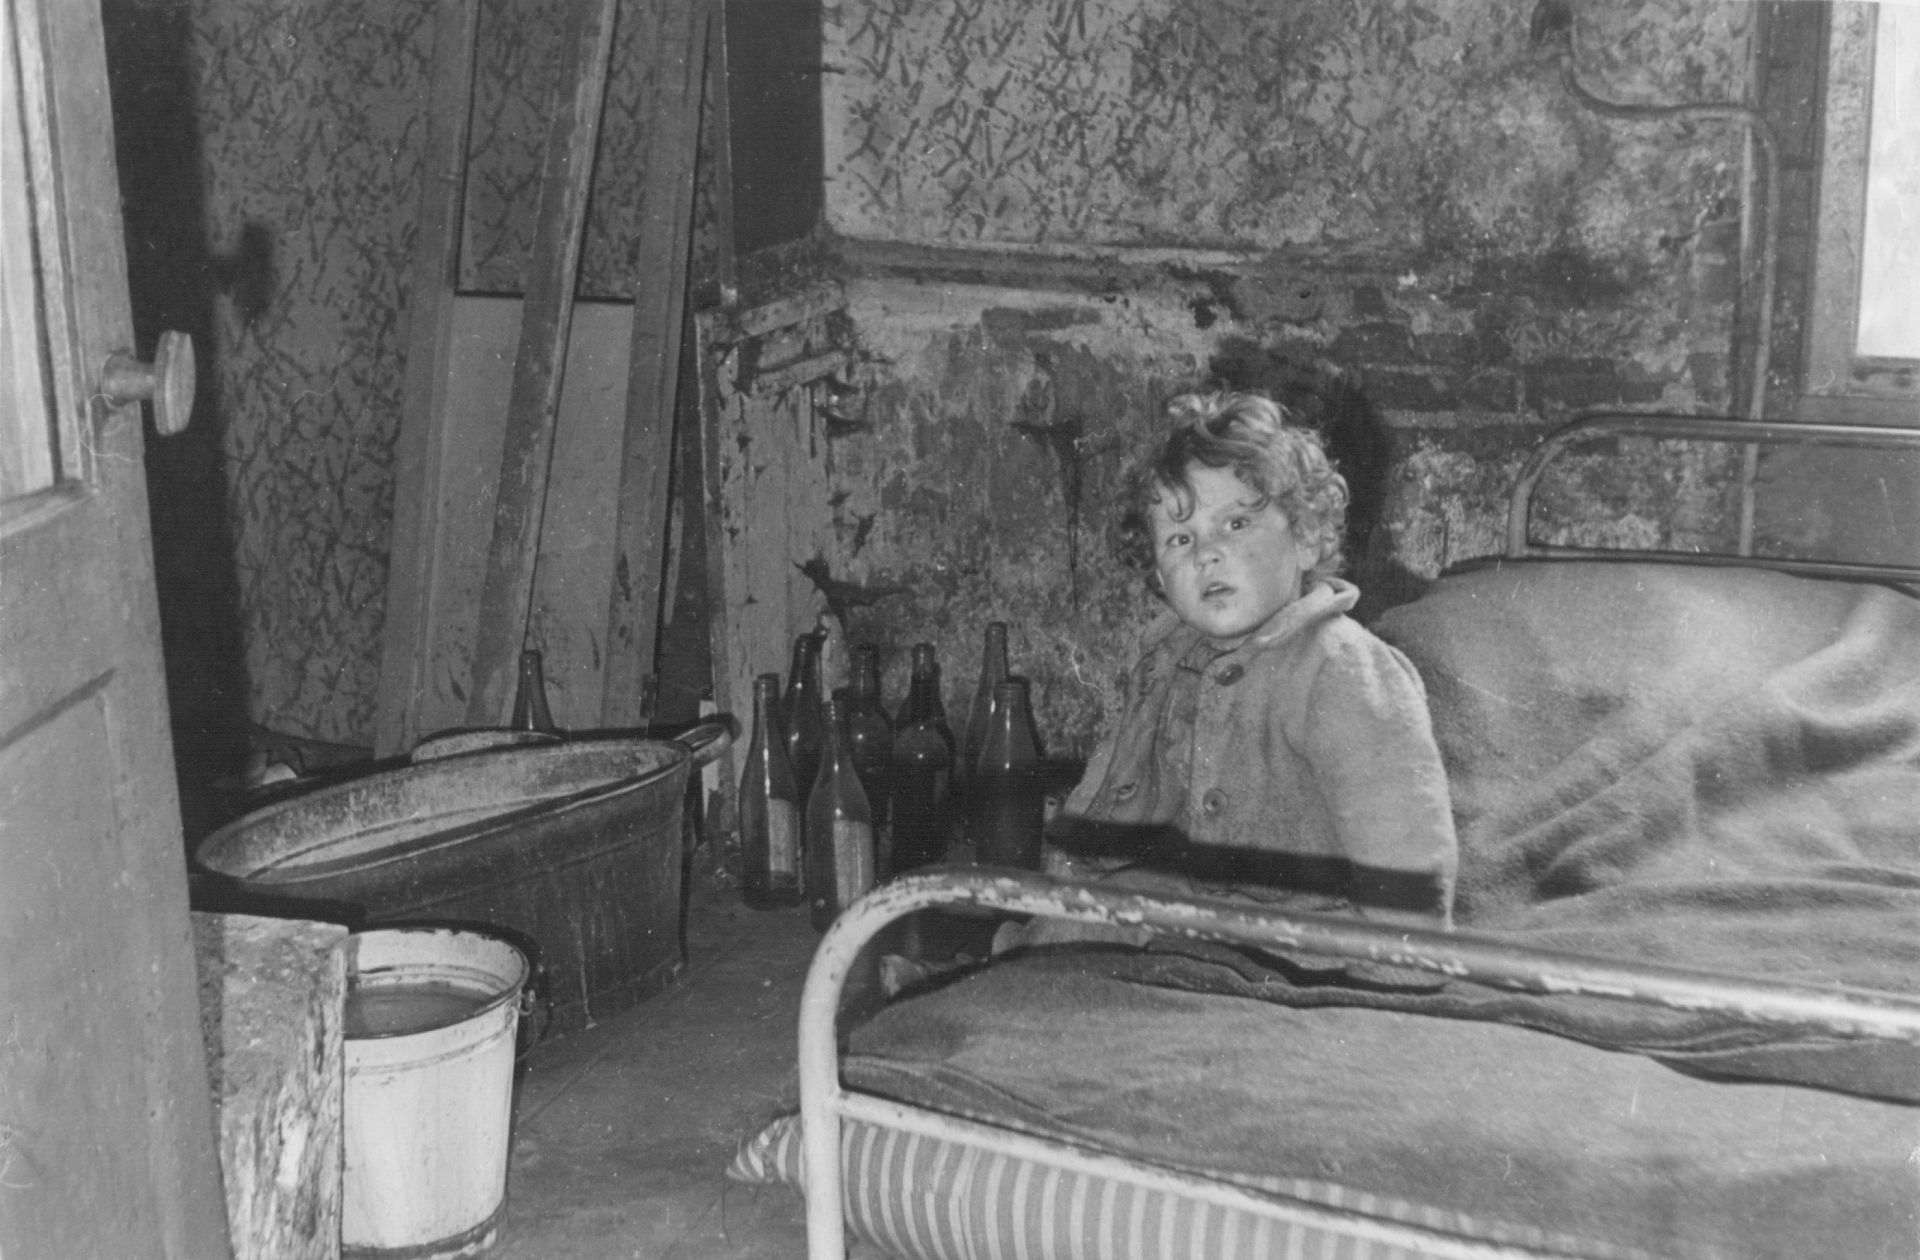 Een kind, kleuter nog zit op het bed in een kamer van een onbewoonbaar verklaarde woning. Er staan drankflessen op de grond.